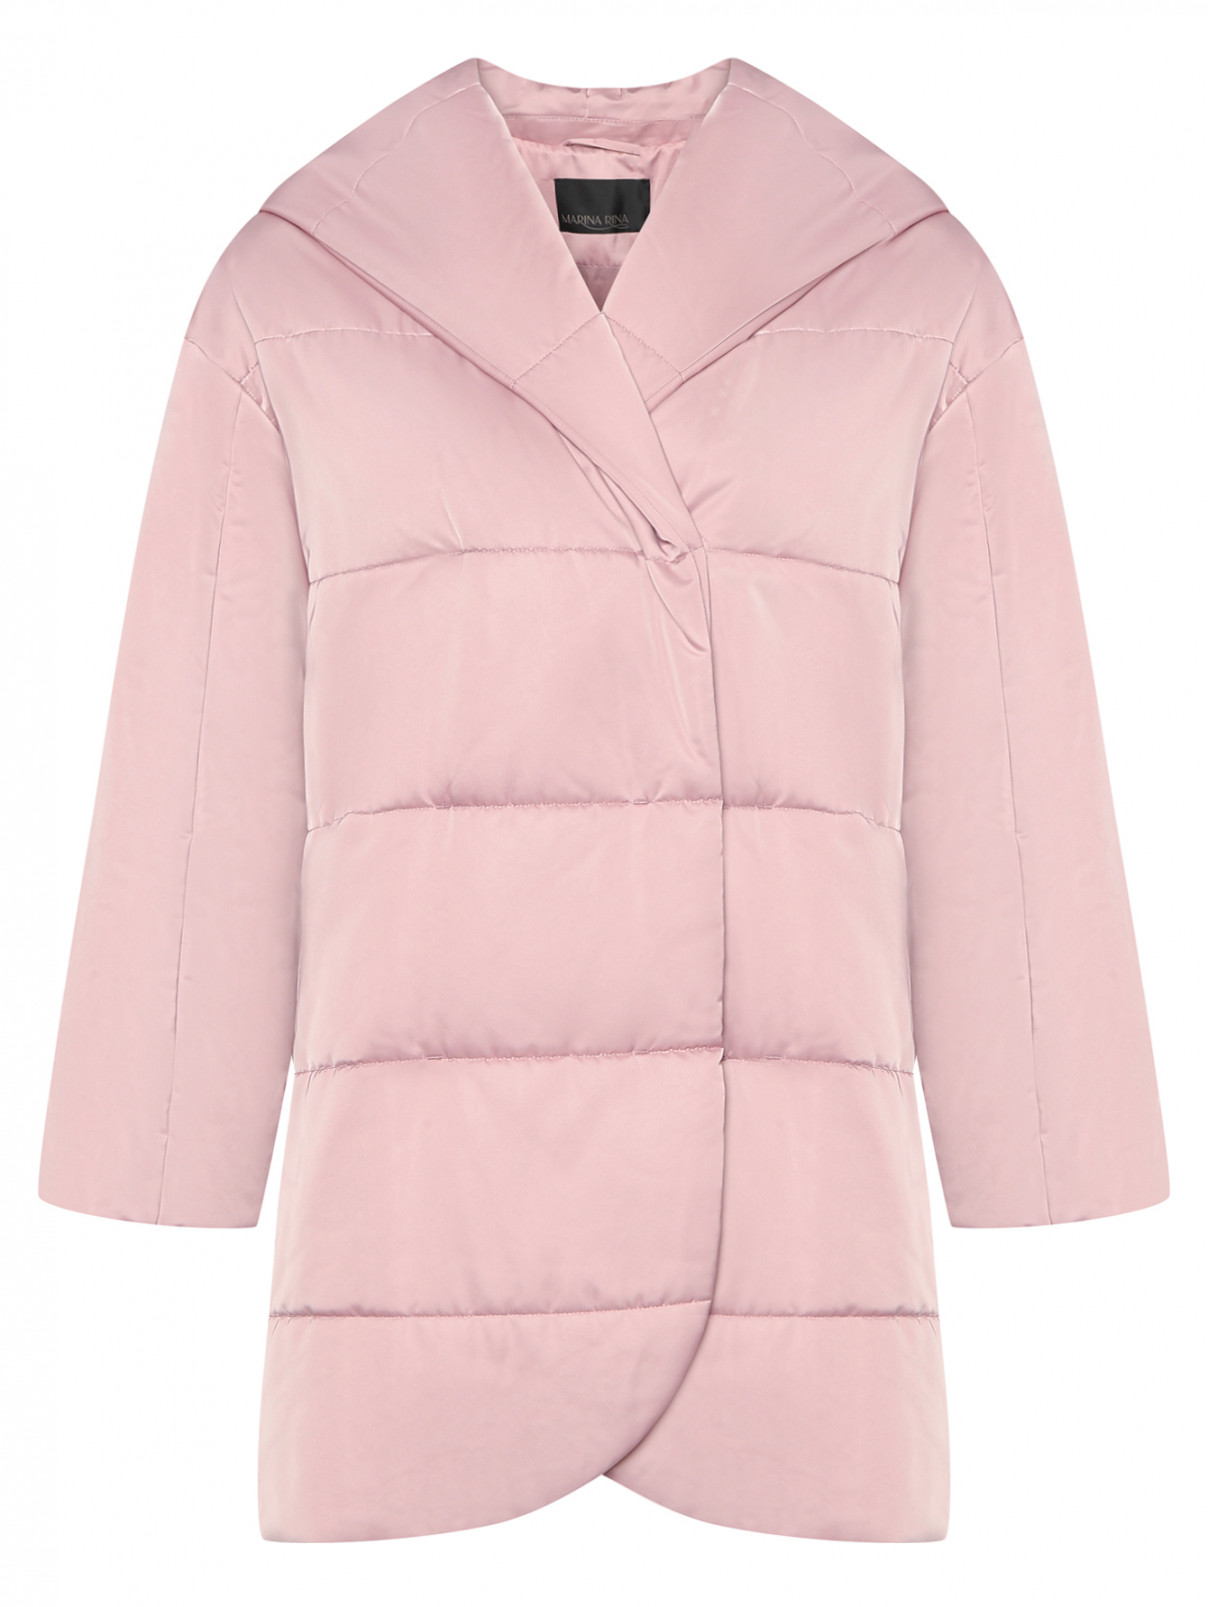 Куртка утепленная с капюшоном Marina Rinaldi  –  Общий вид  – Цвет:  Розовый